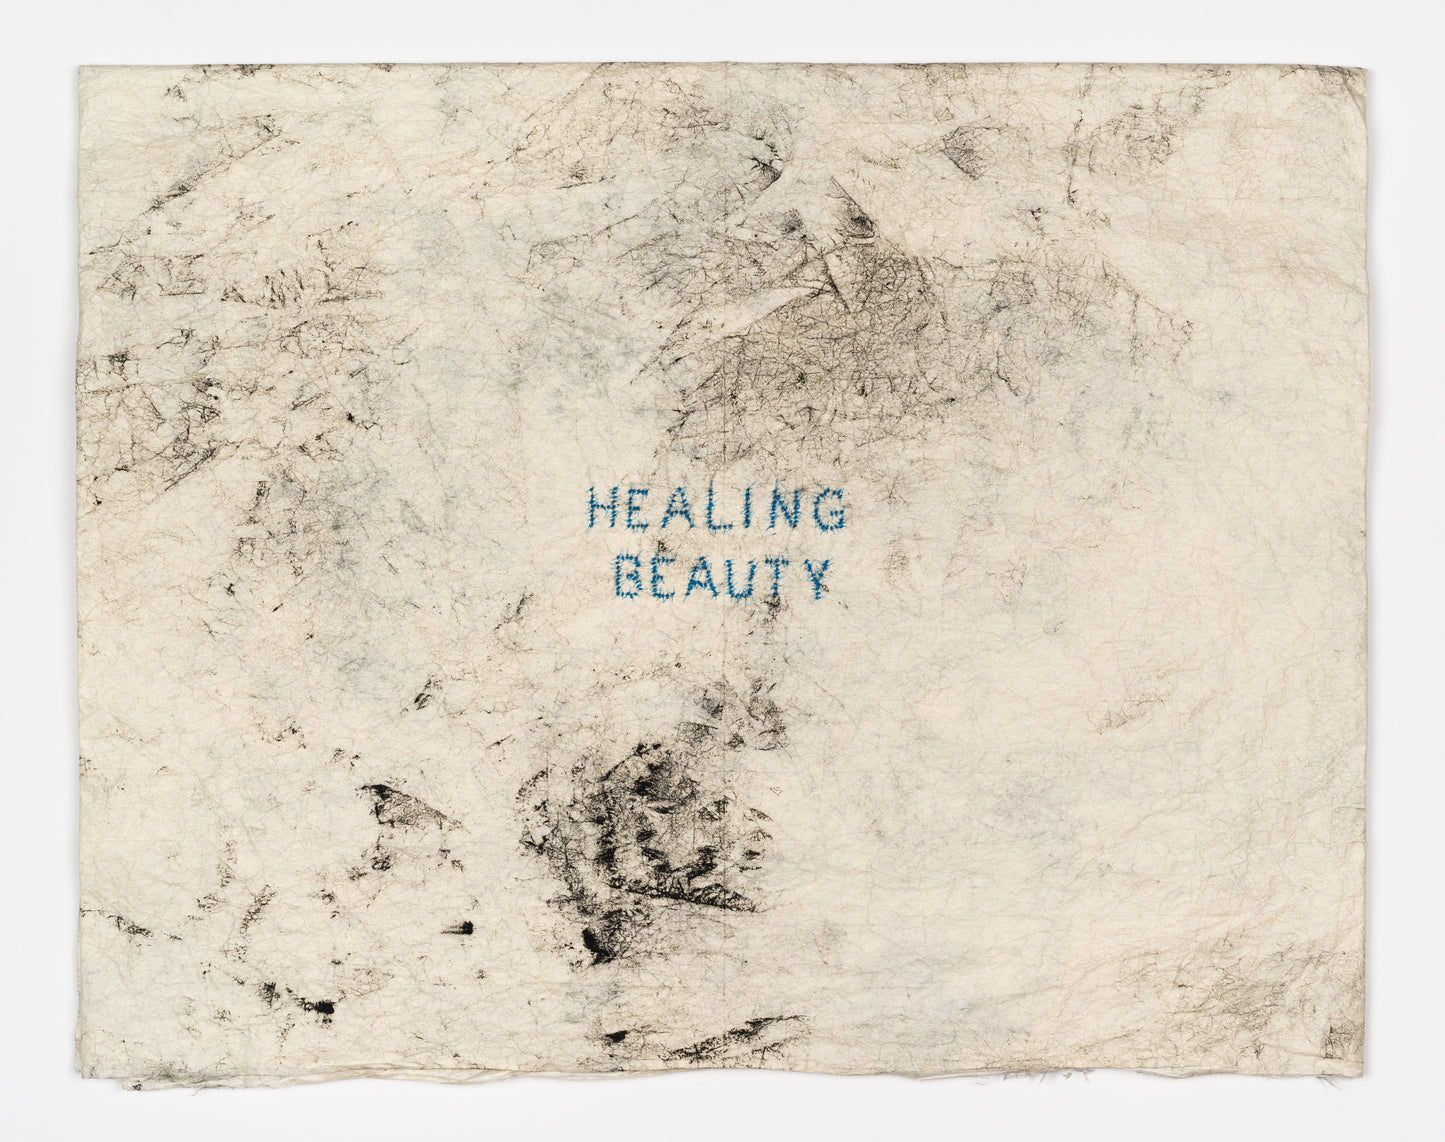 Healing beauty